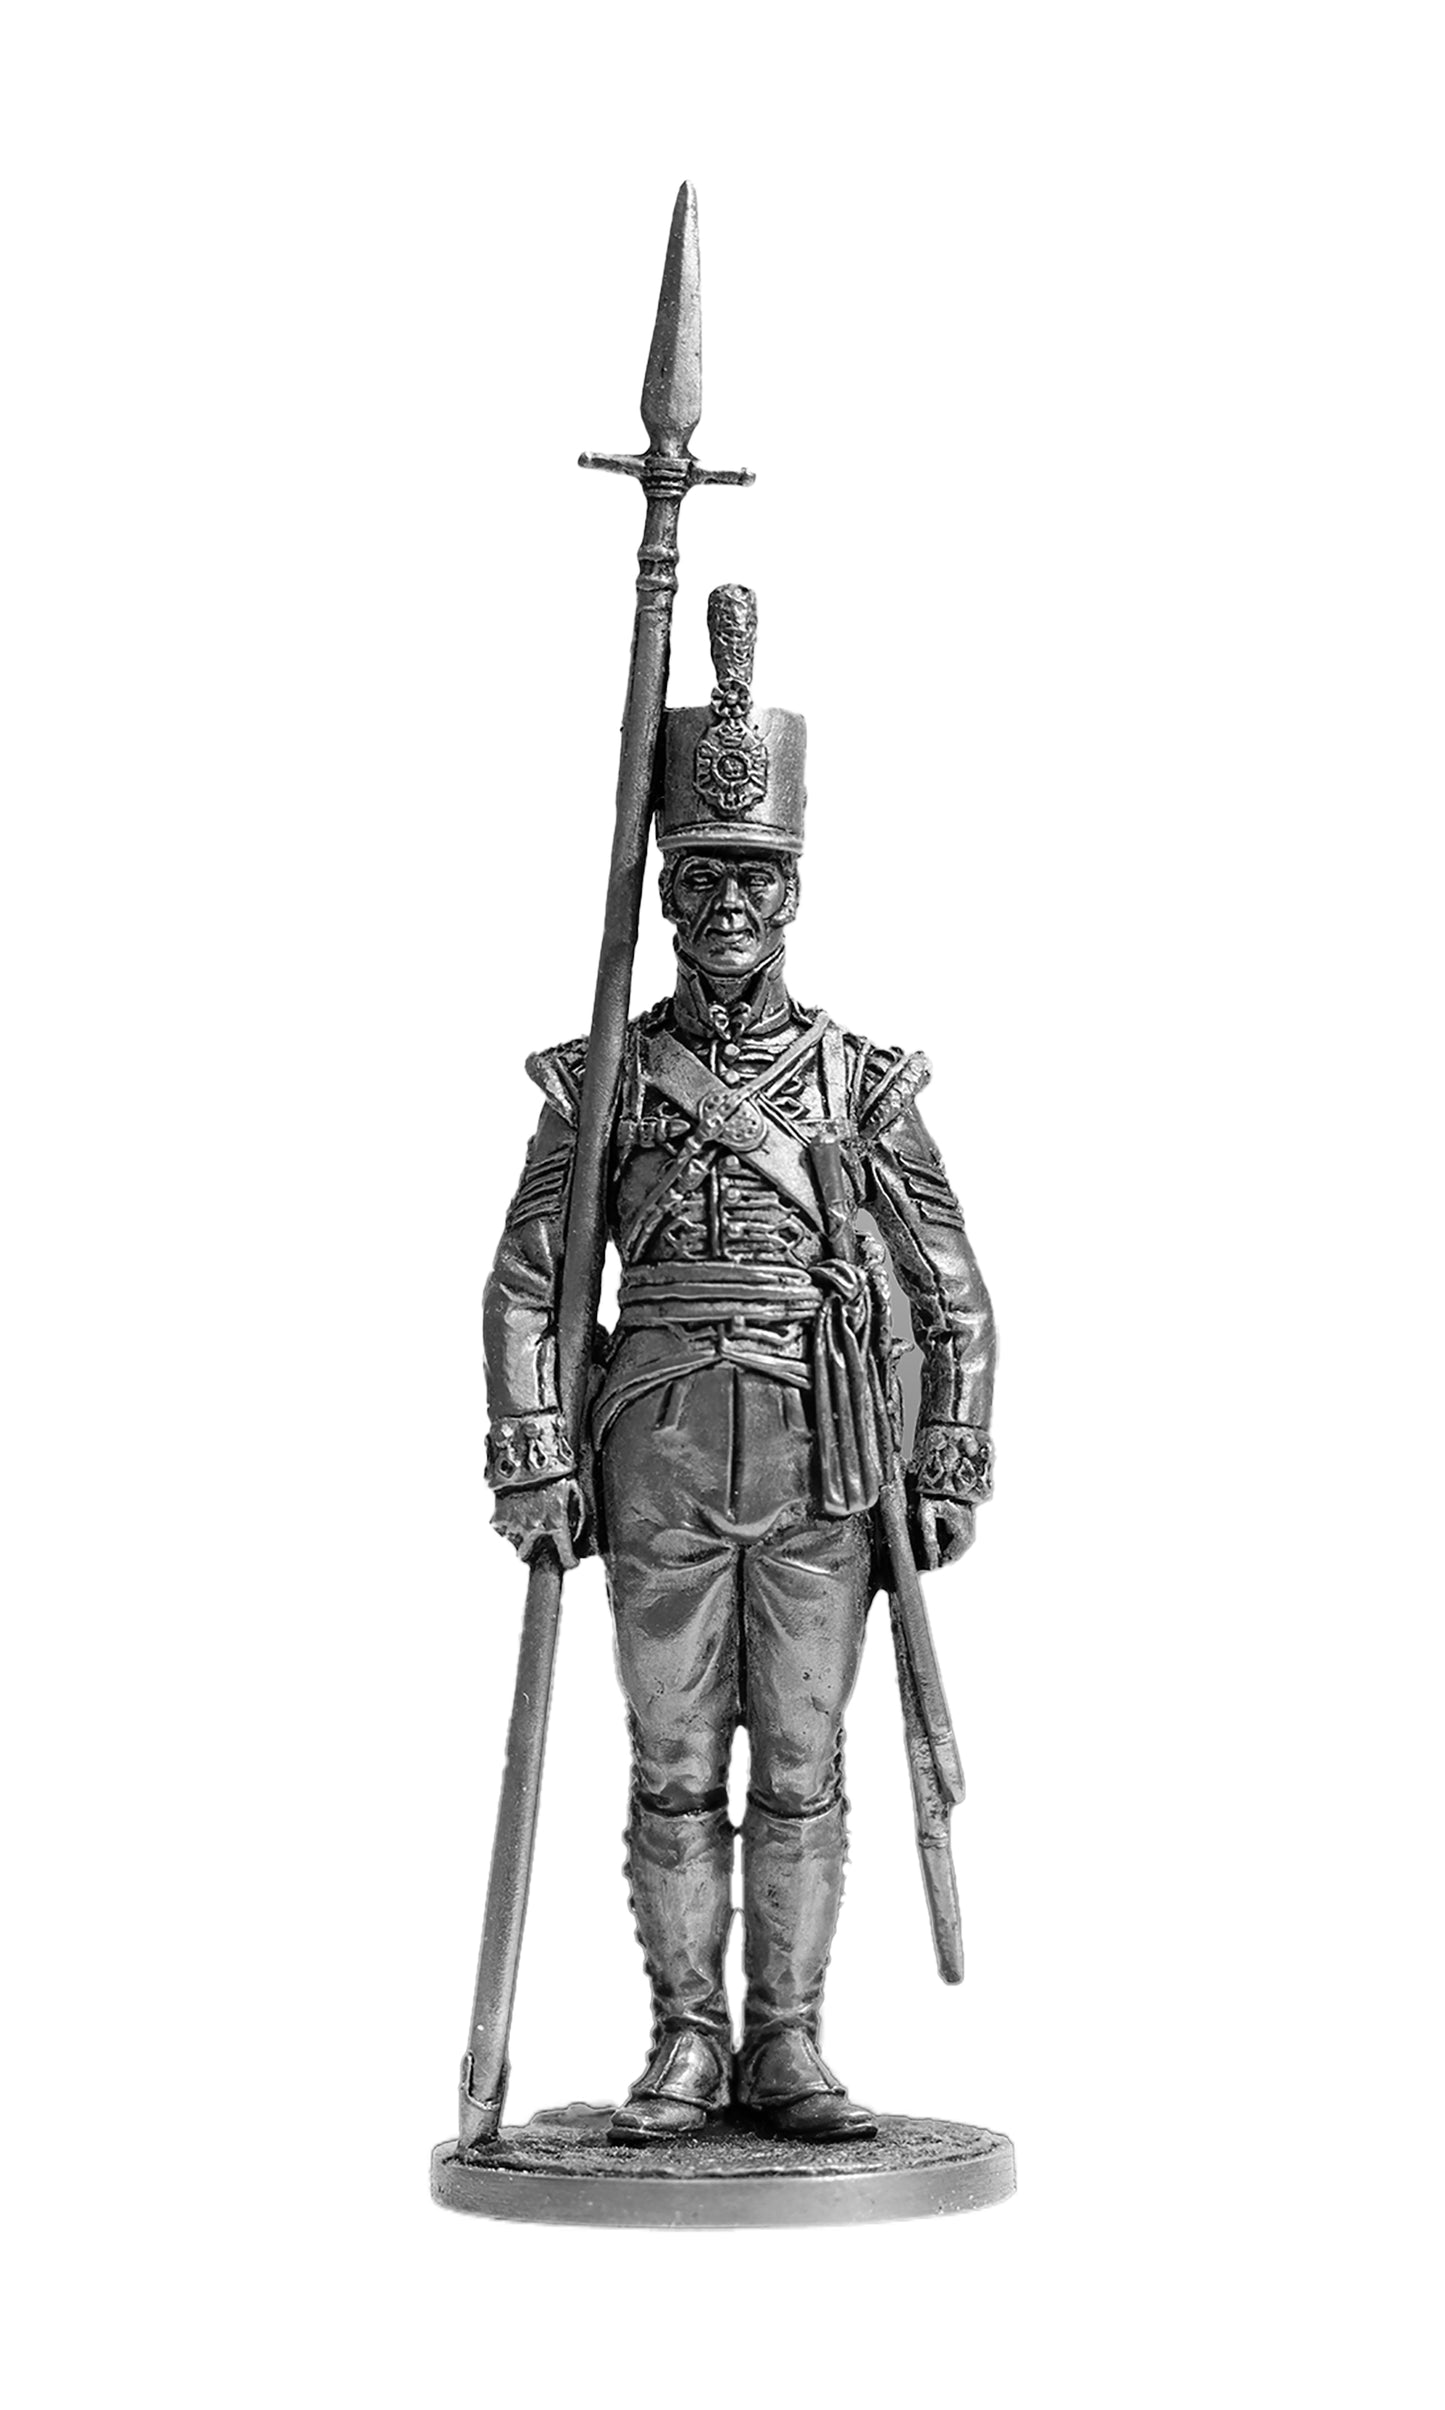 EK-NAP-88 - сержант роты 4-го собственного полка Его Величества Короля. Великобритания, 1802 - 1806 гг.